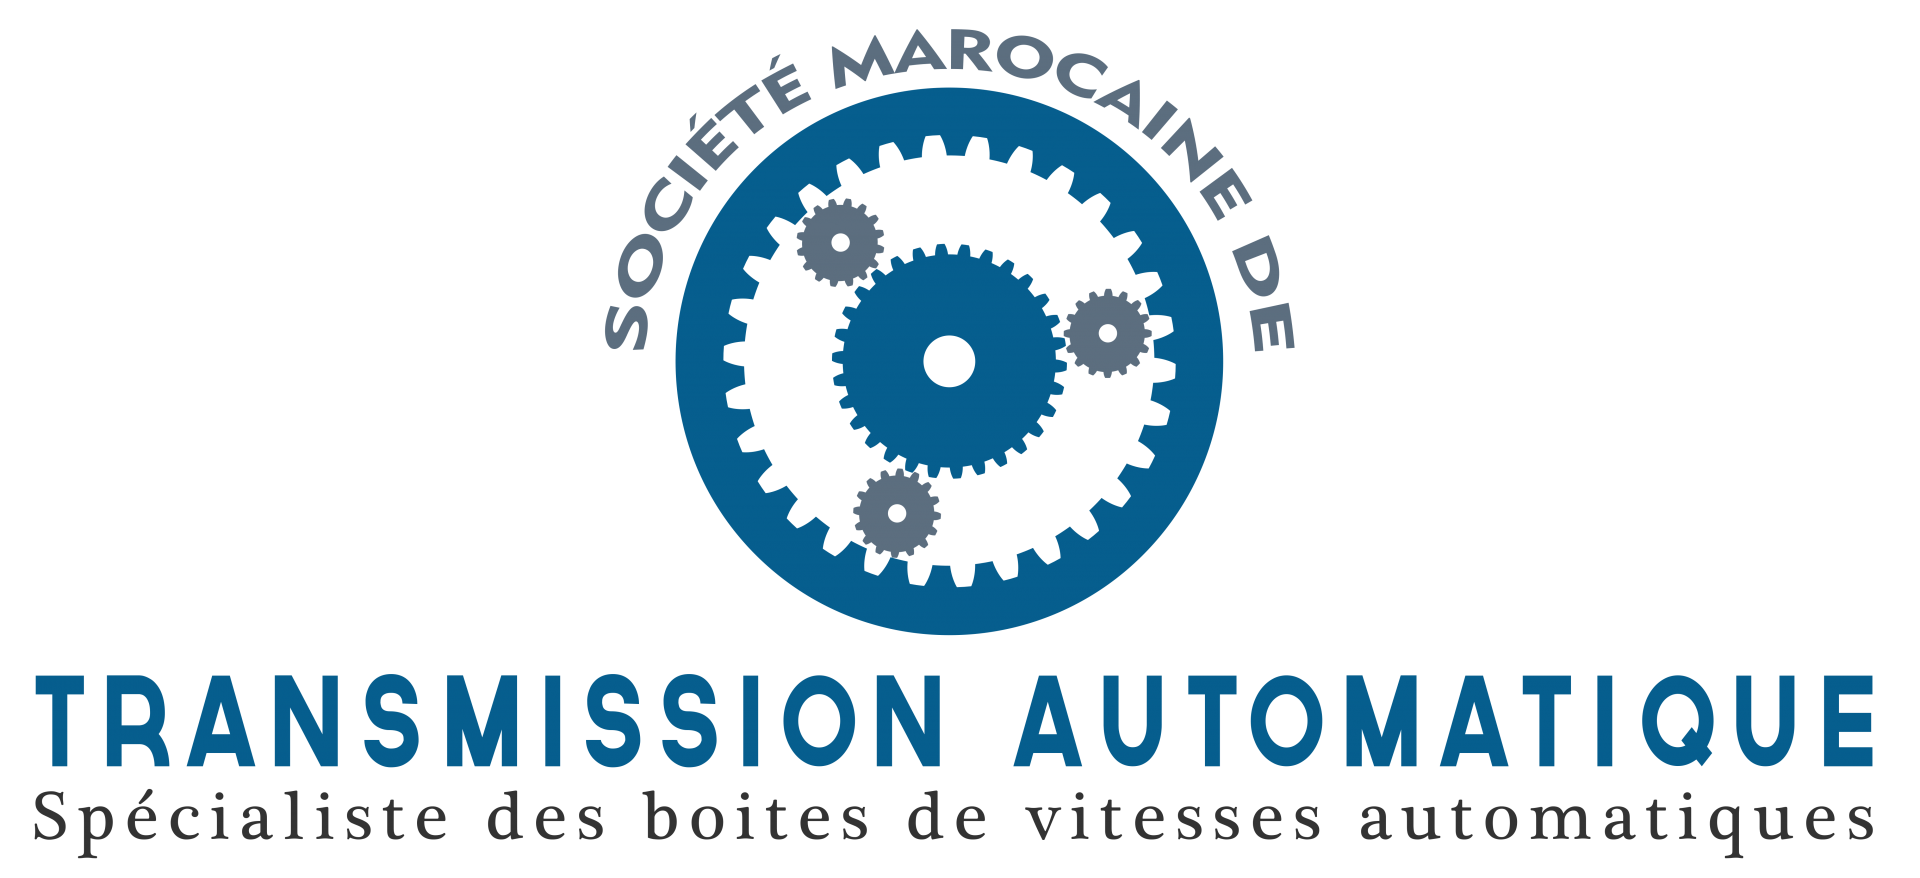 Société Marocaine de Transmission Automatique logo